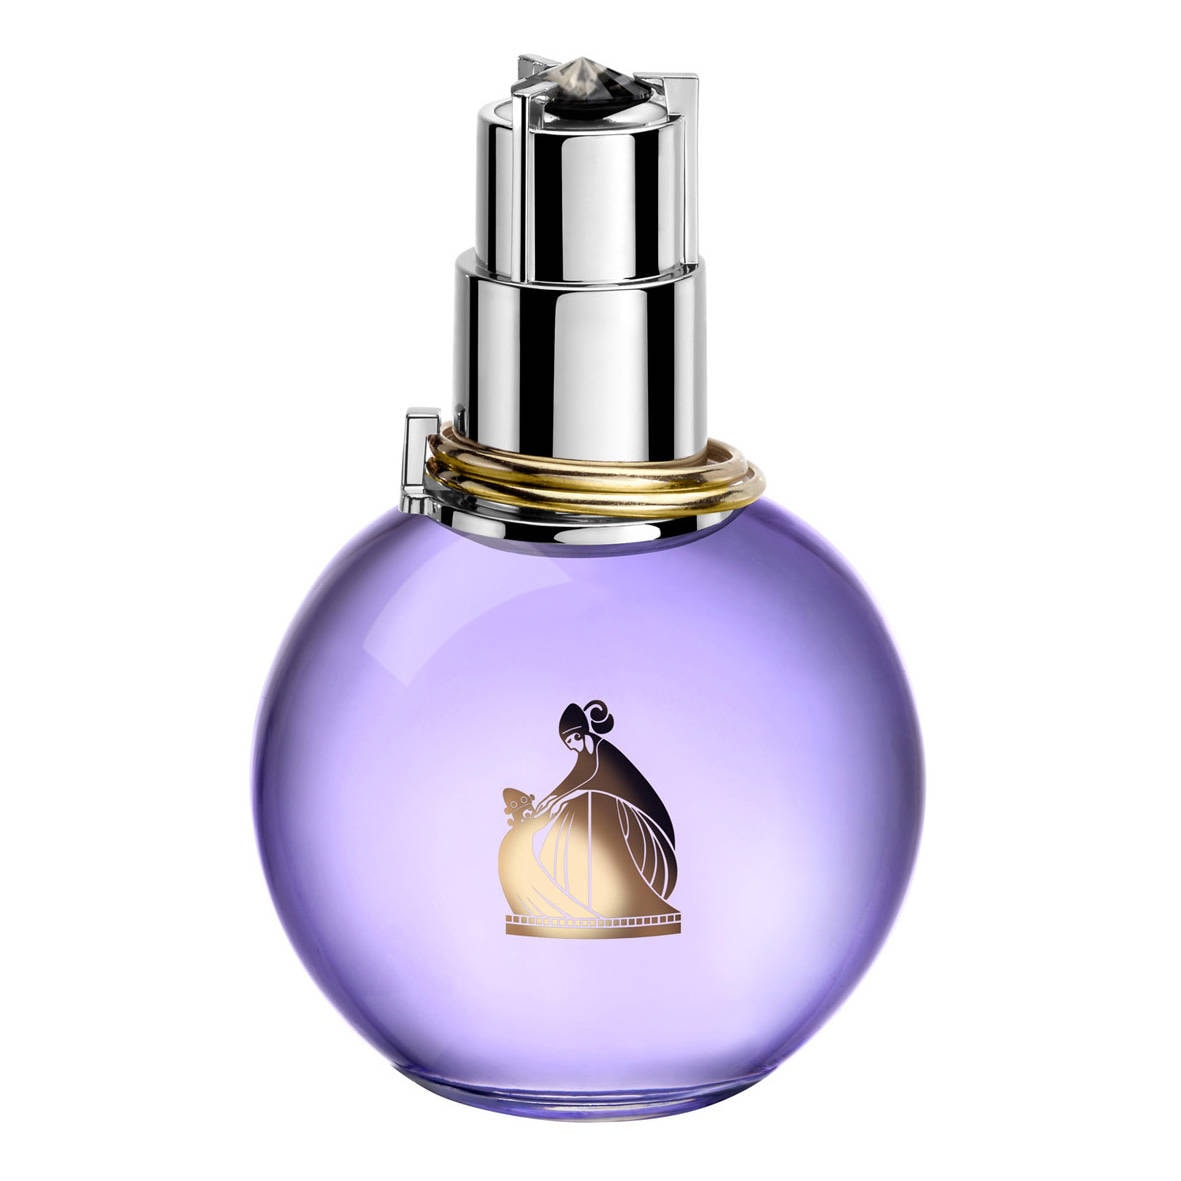 Eclat d'Arpège Lanvin eau de parfum 100ml